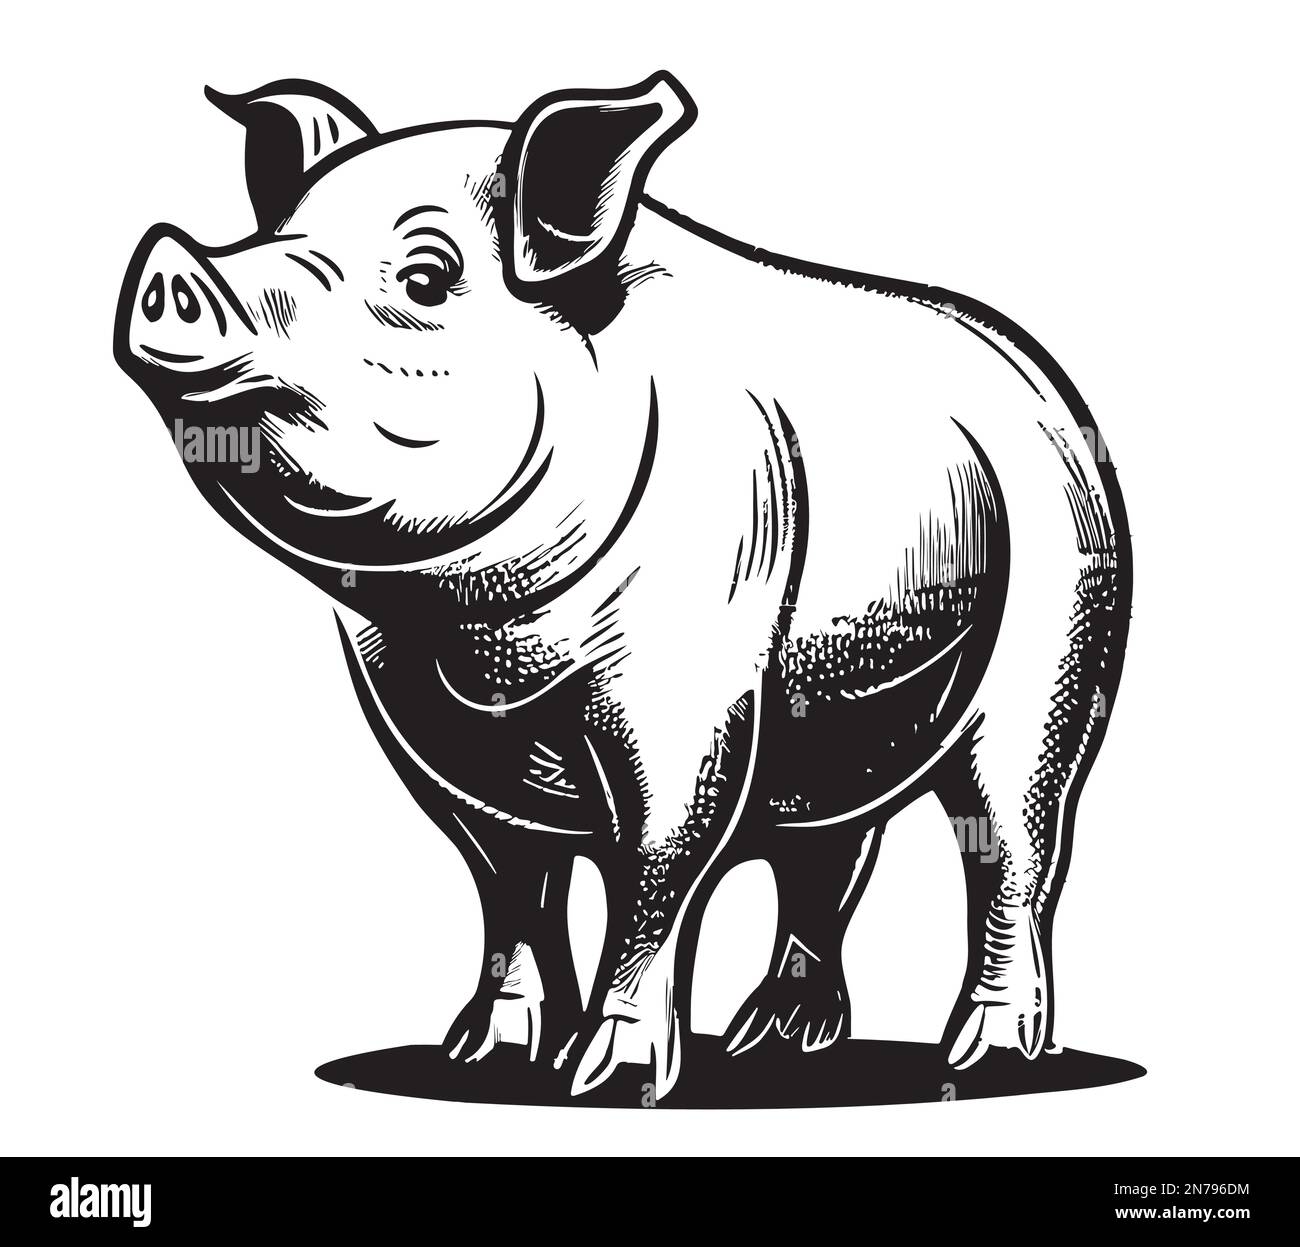 Schweinefarm handgezeichnete Skizze Vektordarstellung Stock Vektor